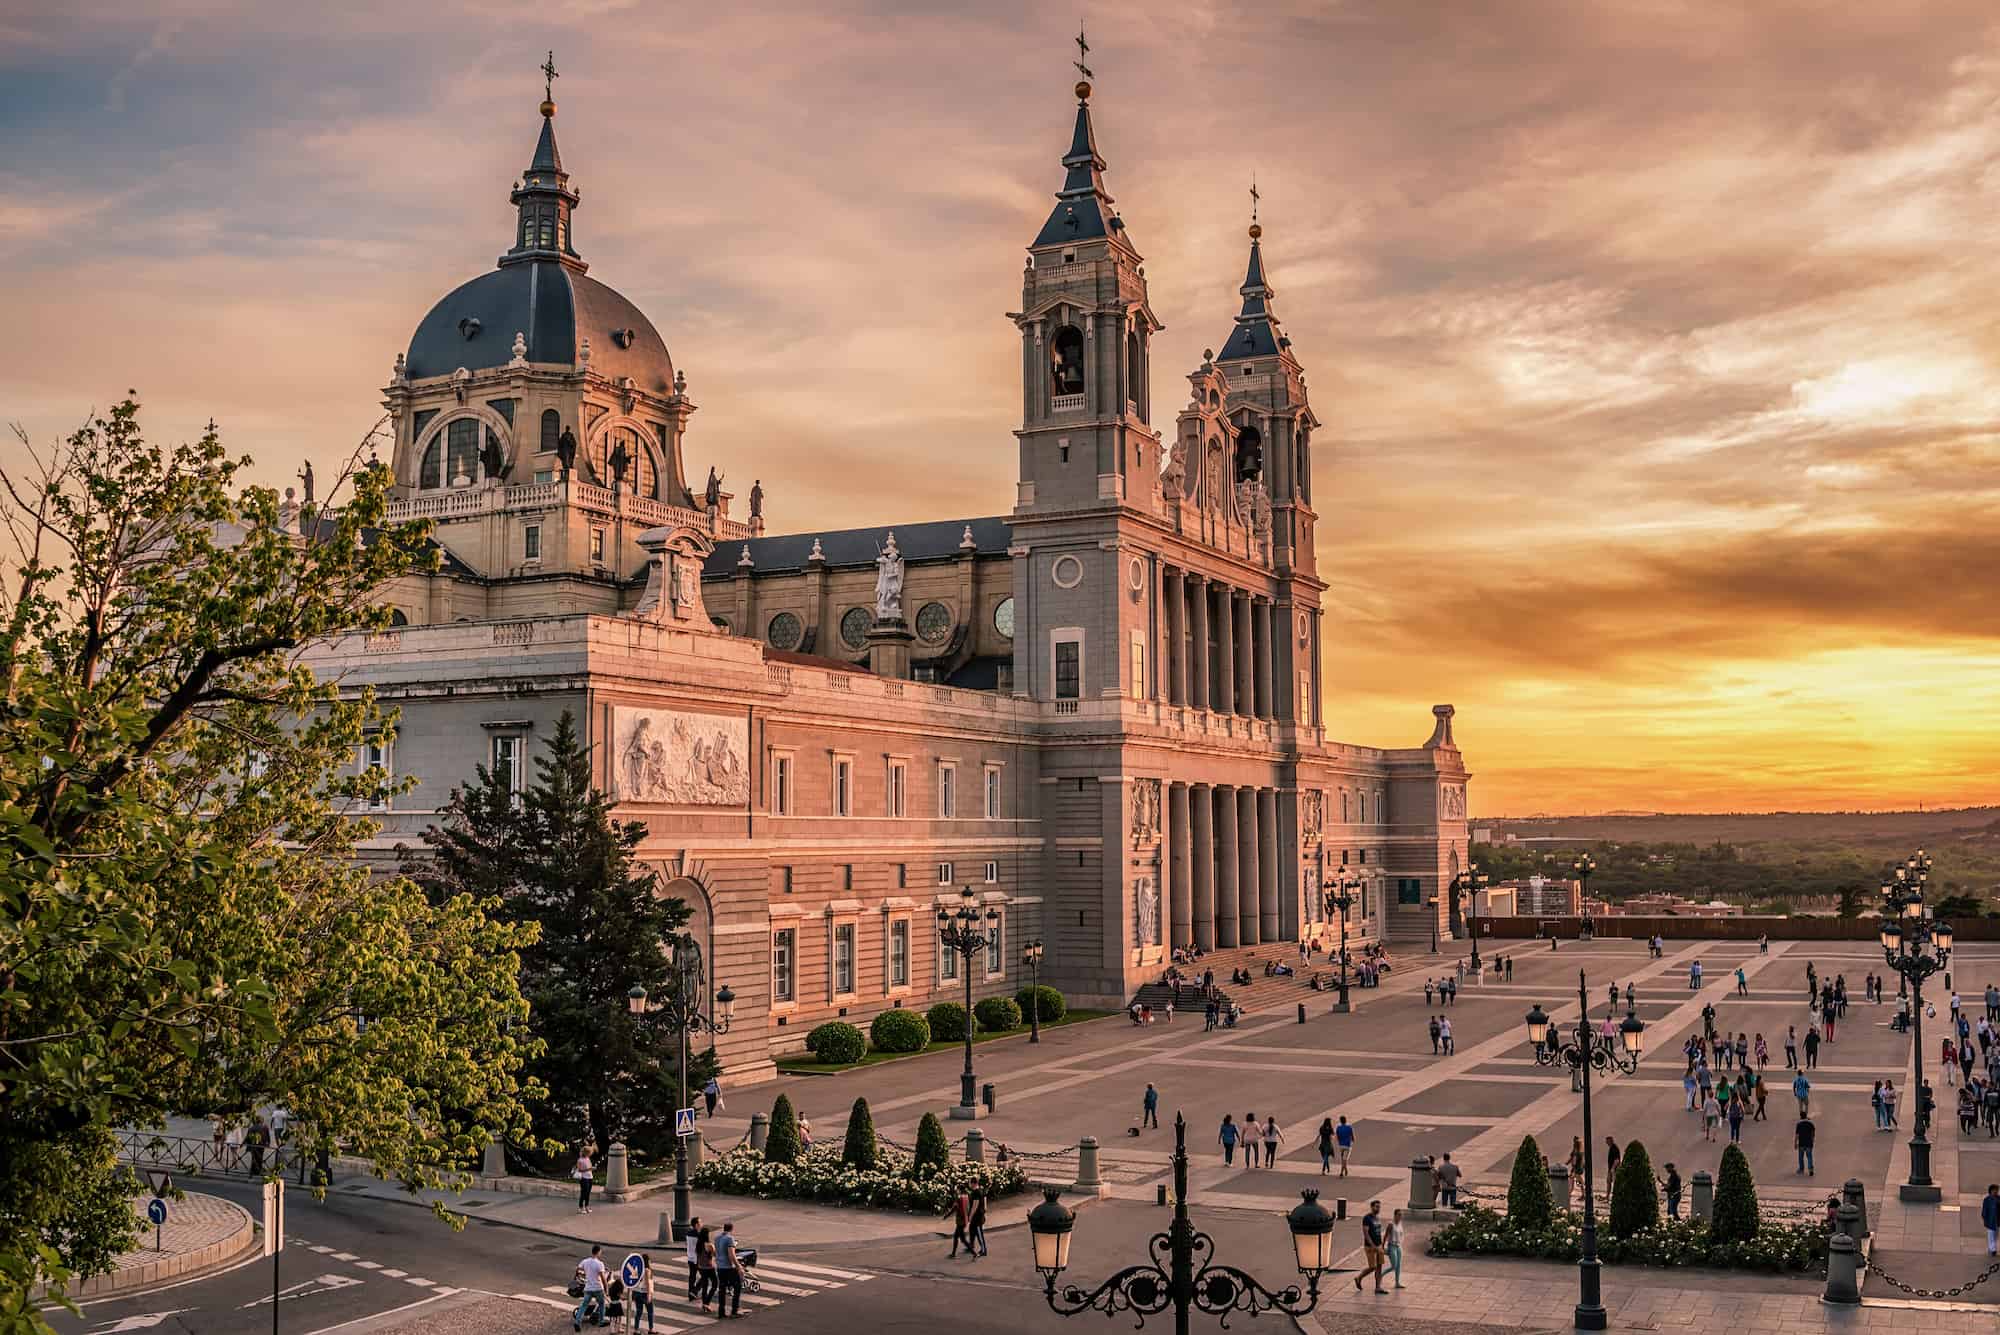 Palacio Real - Los 5 atardeceres más bonitos de la ciudad de Madrid.